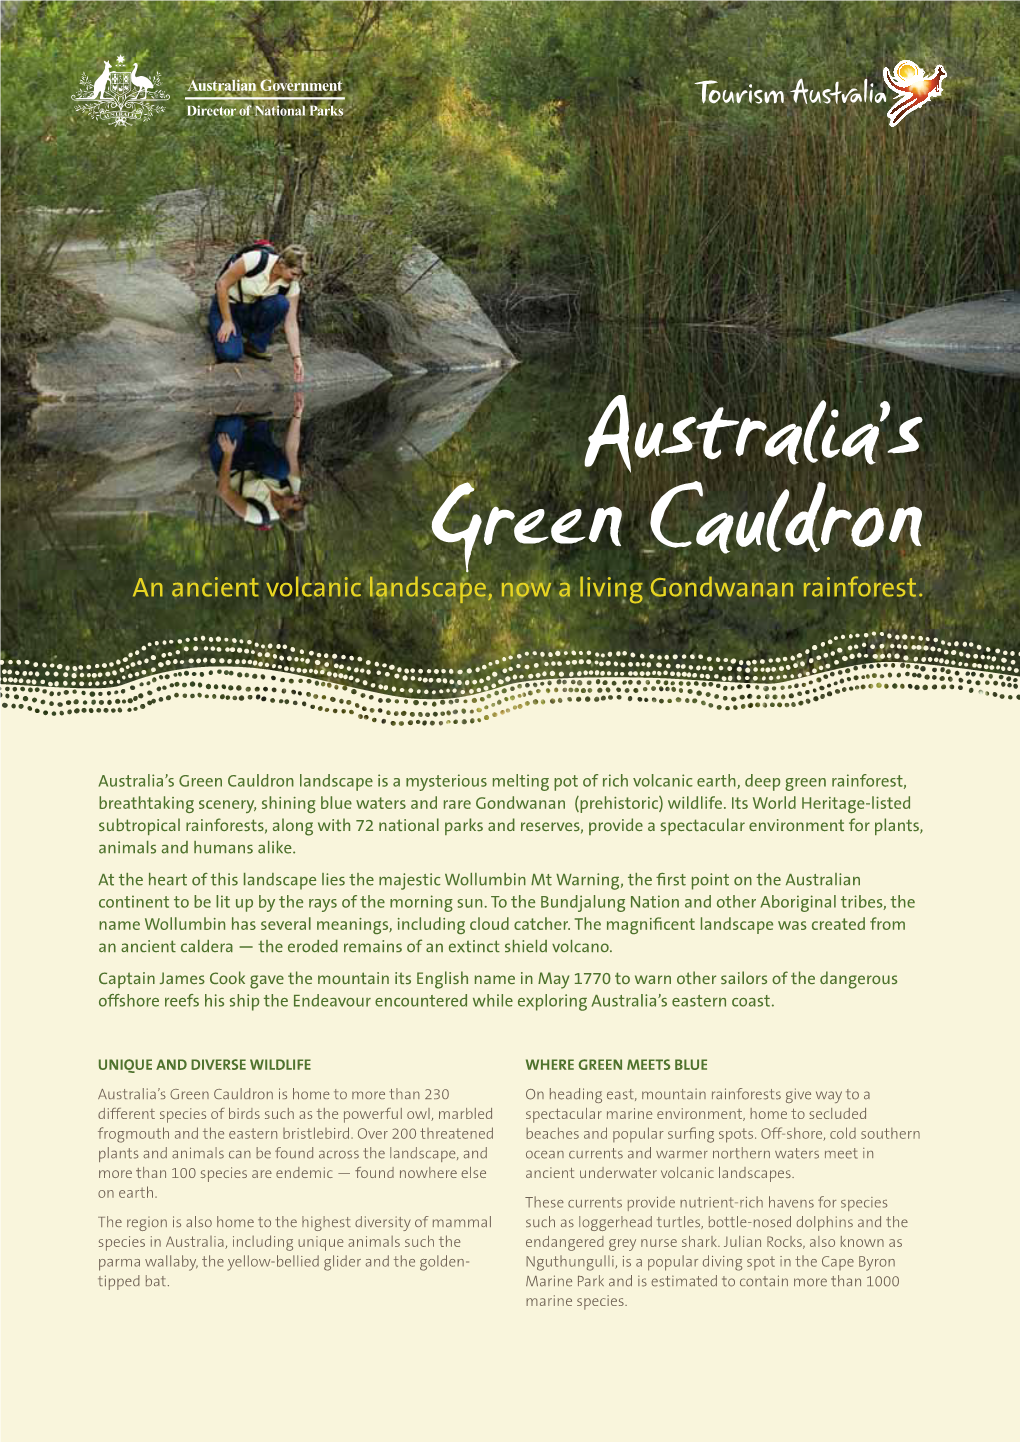 Australia's Green Cauldron